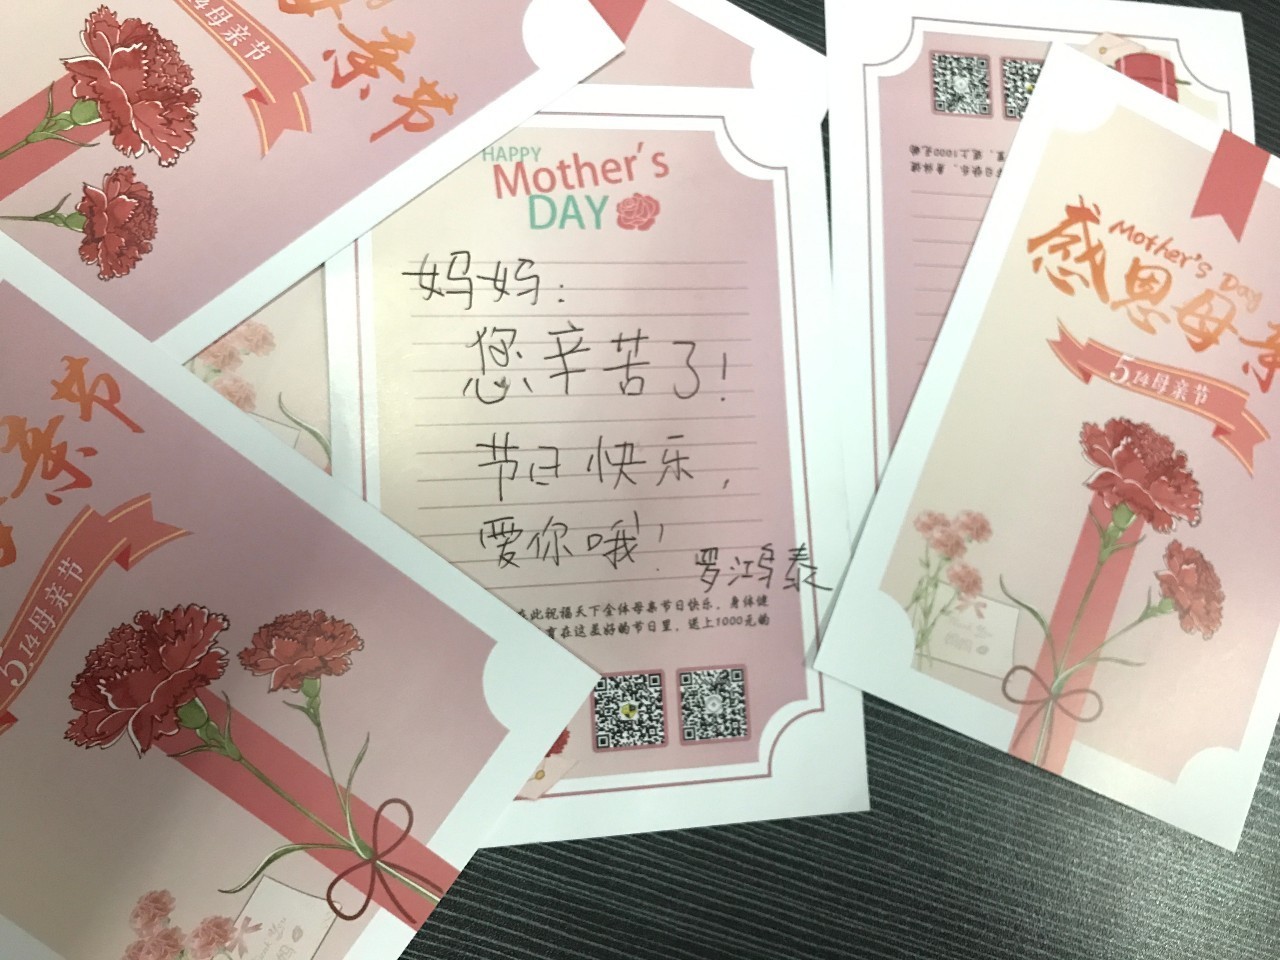 母亲节送花贺卡内容图片